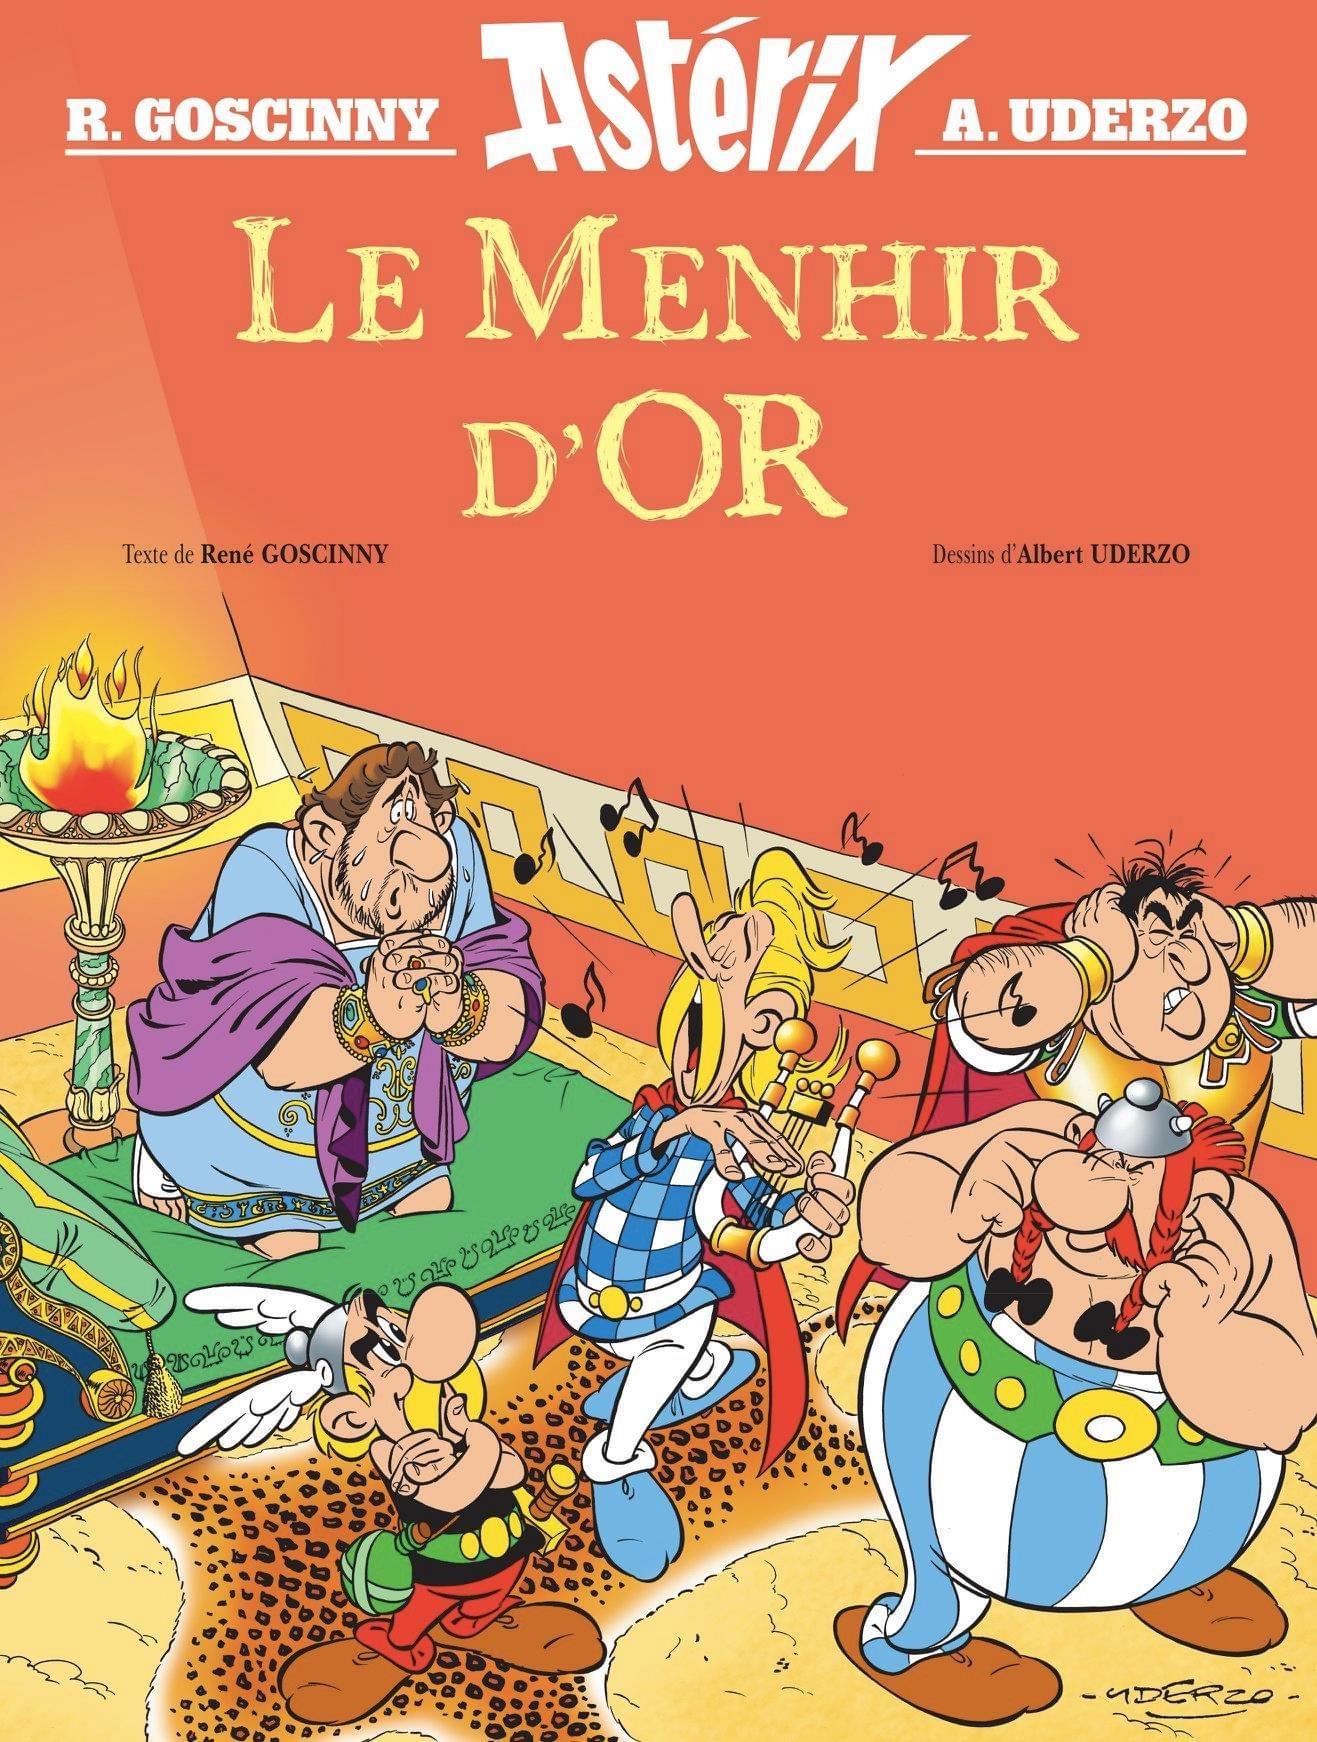 La couverture du livre "Le Menhir d'or". [Editions Albert René]